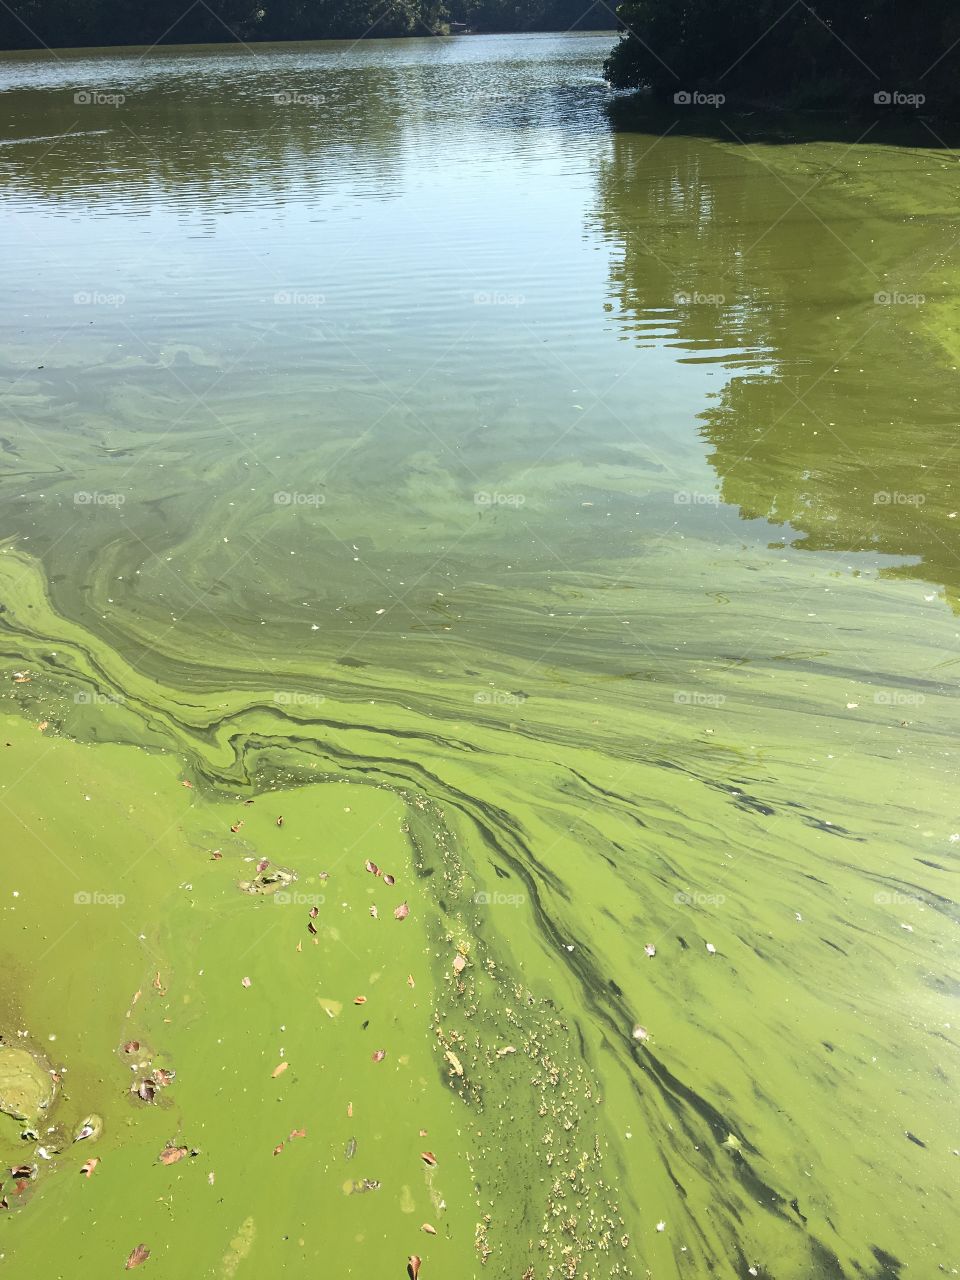 Algae on lake